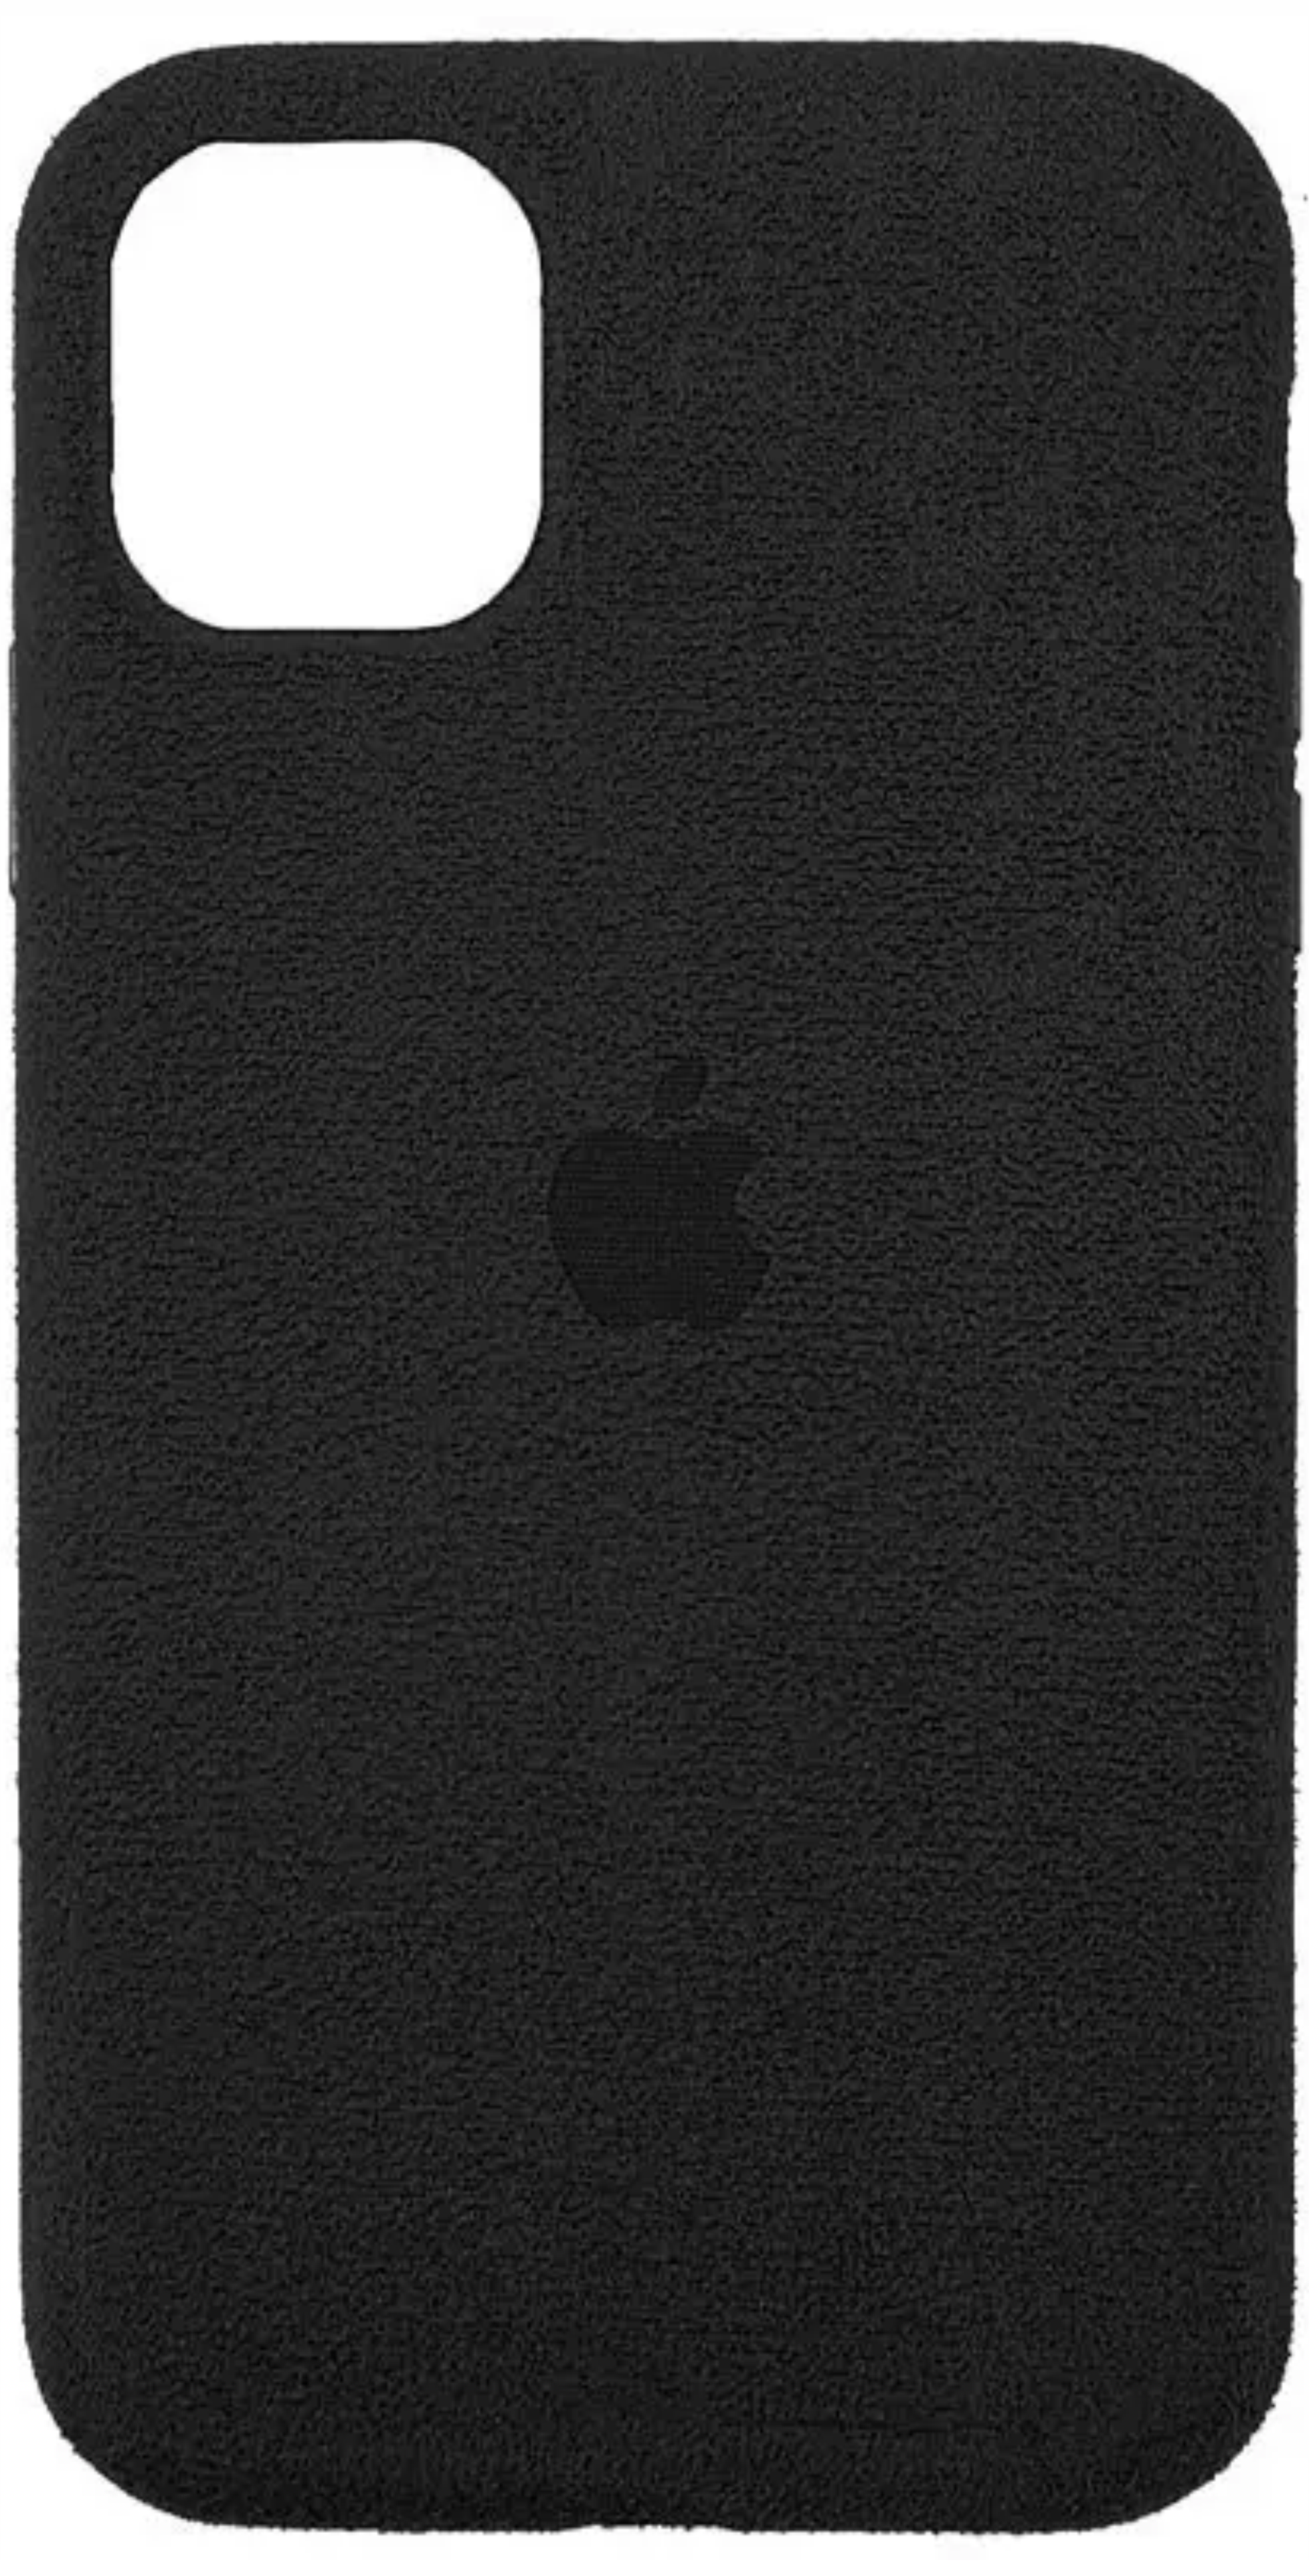 Чехол Original Alcantara Case для Apple iPhone 11 Pro Max, черный